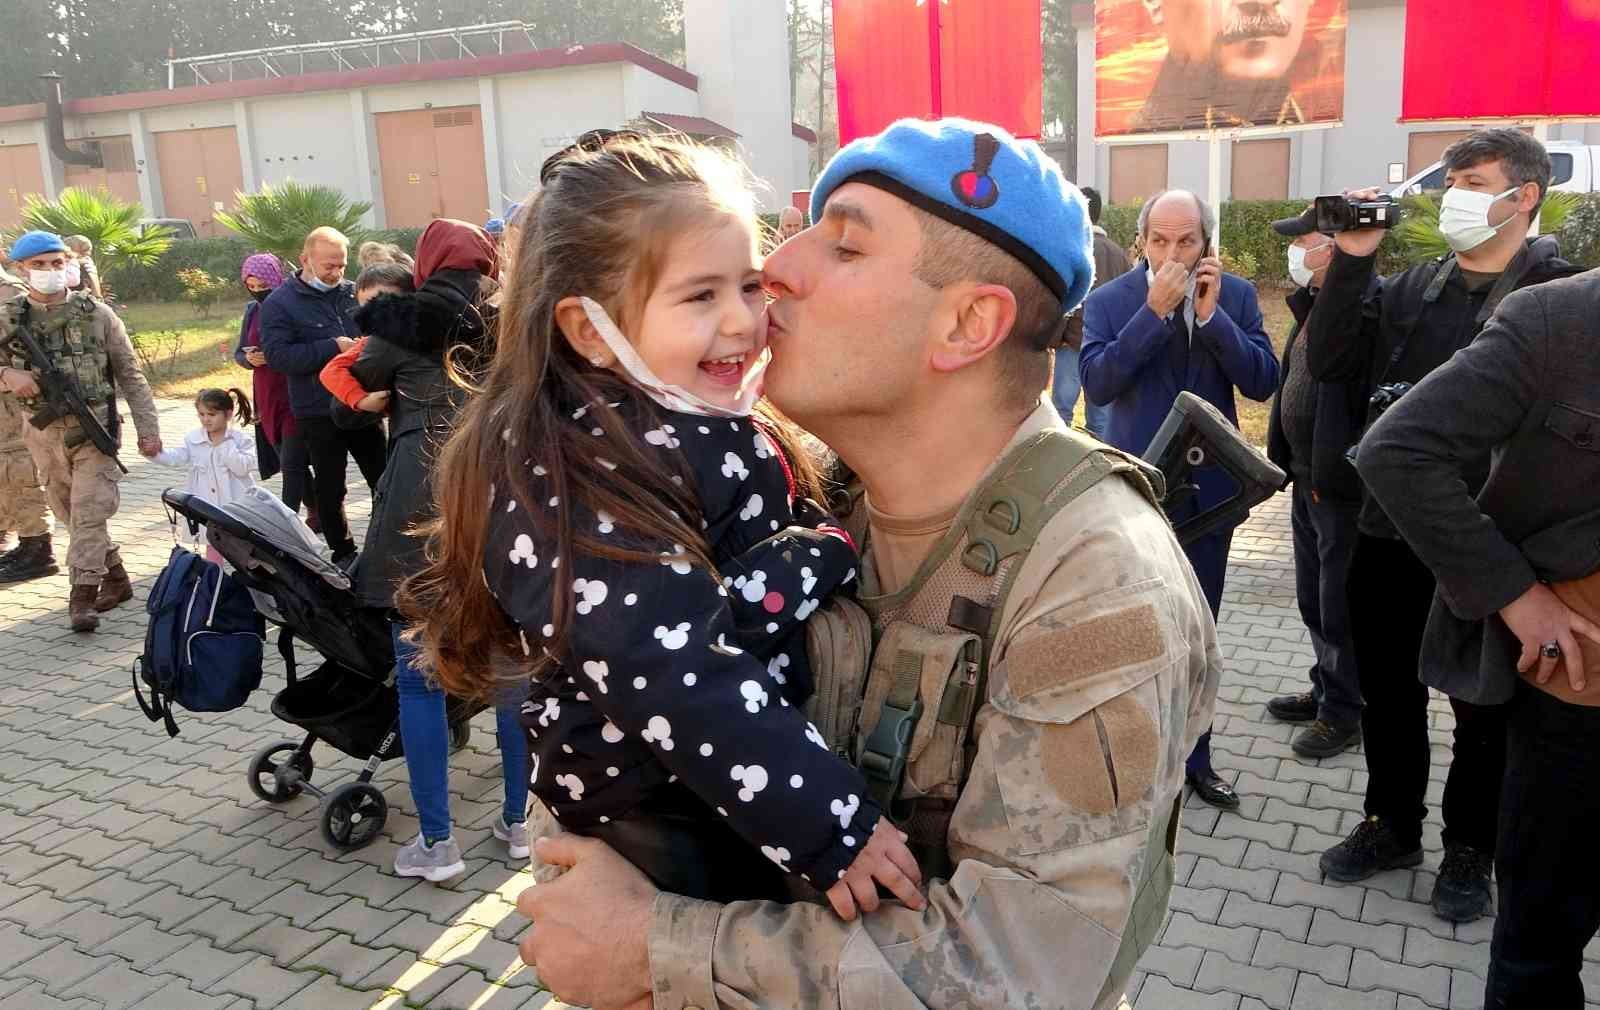 Suriye görevinden dönen komandolar evlatlarını öpücüklere boğdu #osmaniye